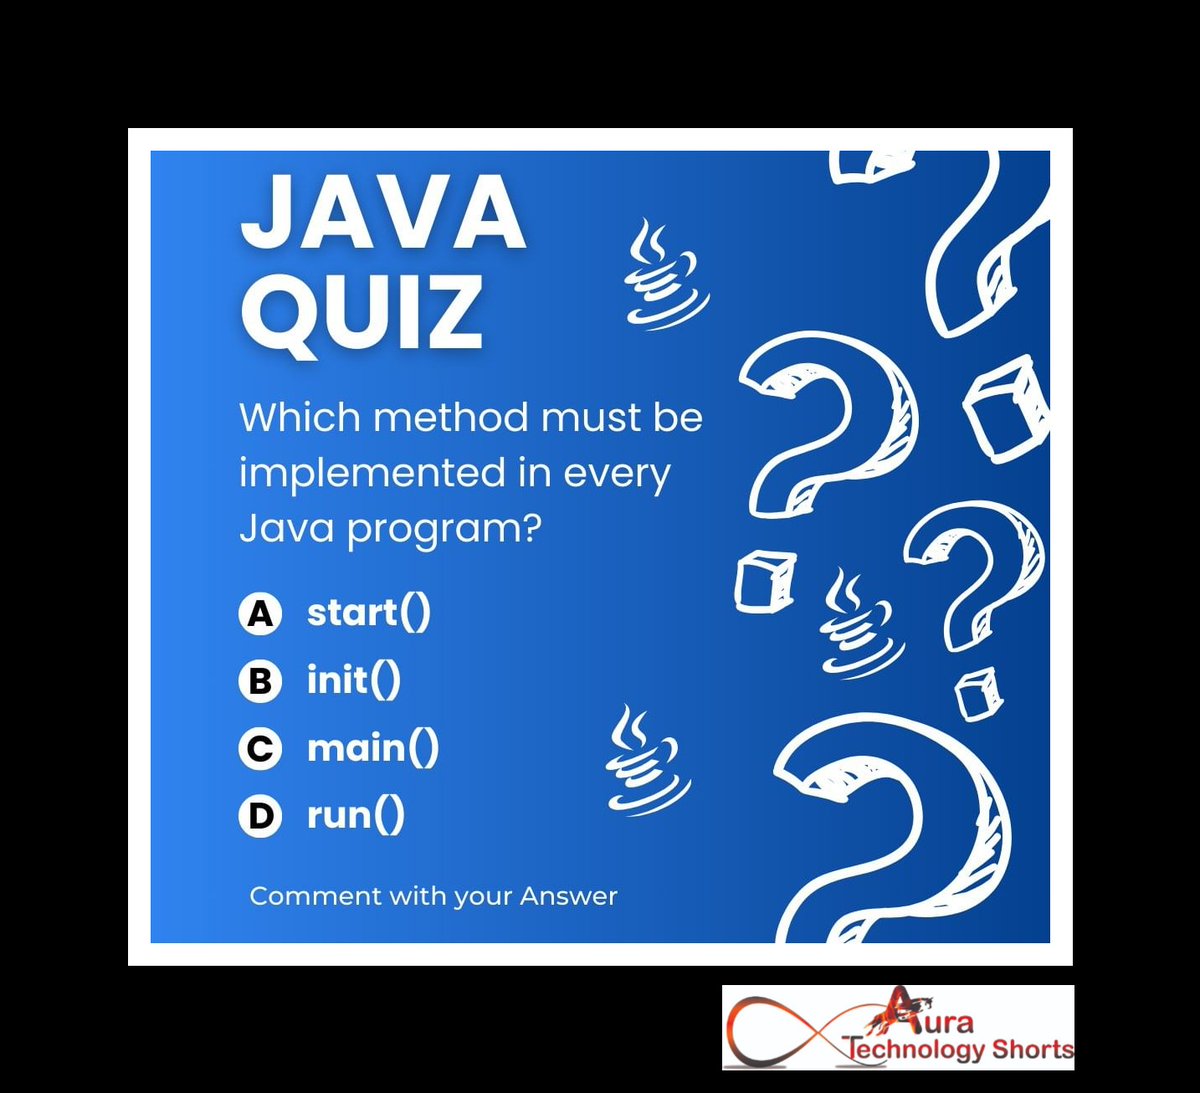 Java quiz
............ 
#JavaQuiz, #JavaProgramming, #JavaCoding, #JavaScript, #JavaCoder, #JavaScriptProgramming, #JavaDevelopers, #JavaLearning, #JavaTutorials, #JavaChallenge